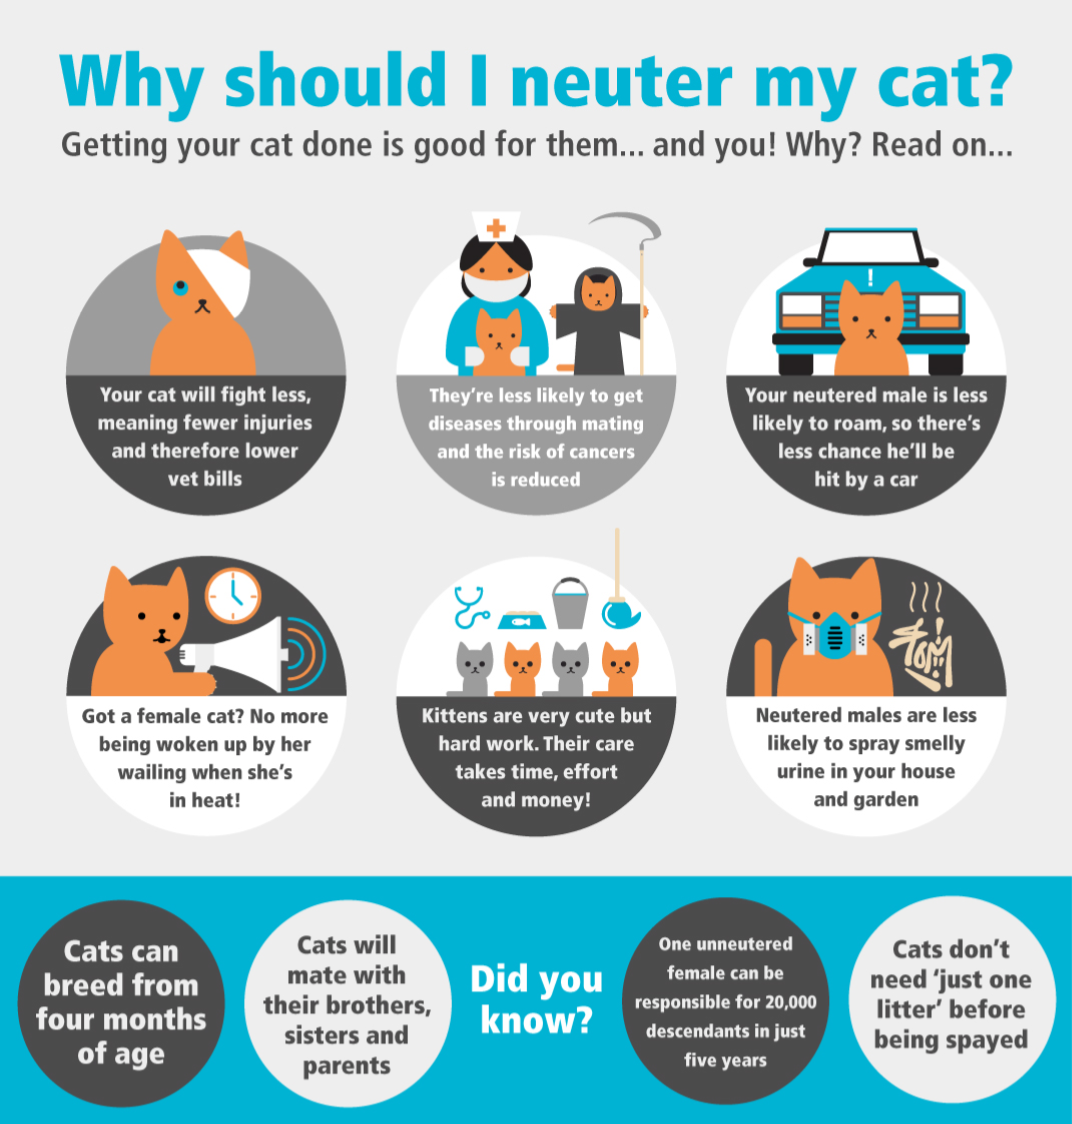 Why should I neuter my cat?